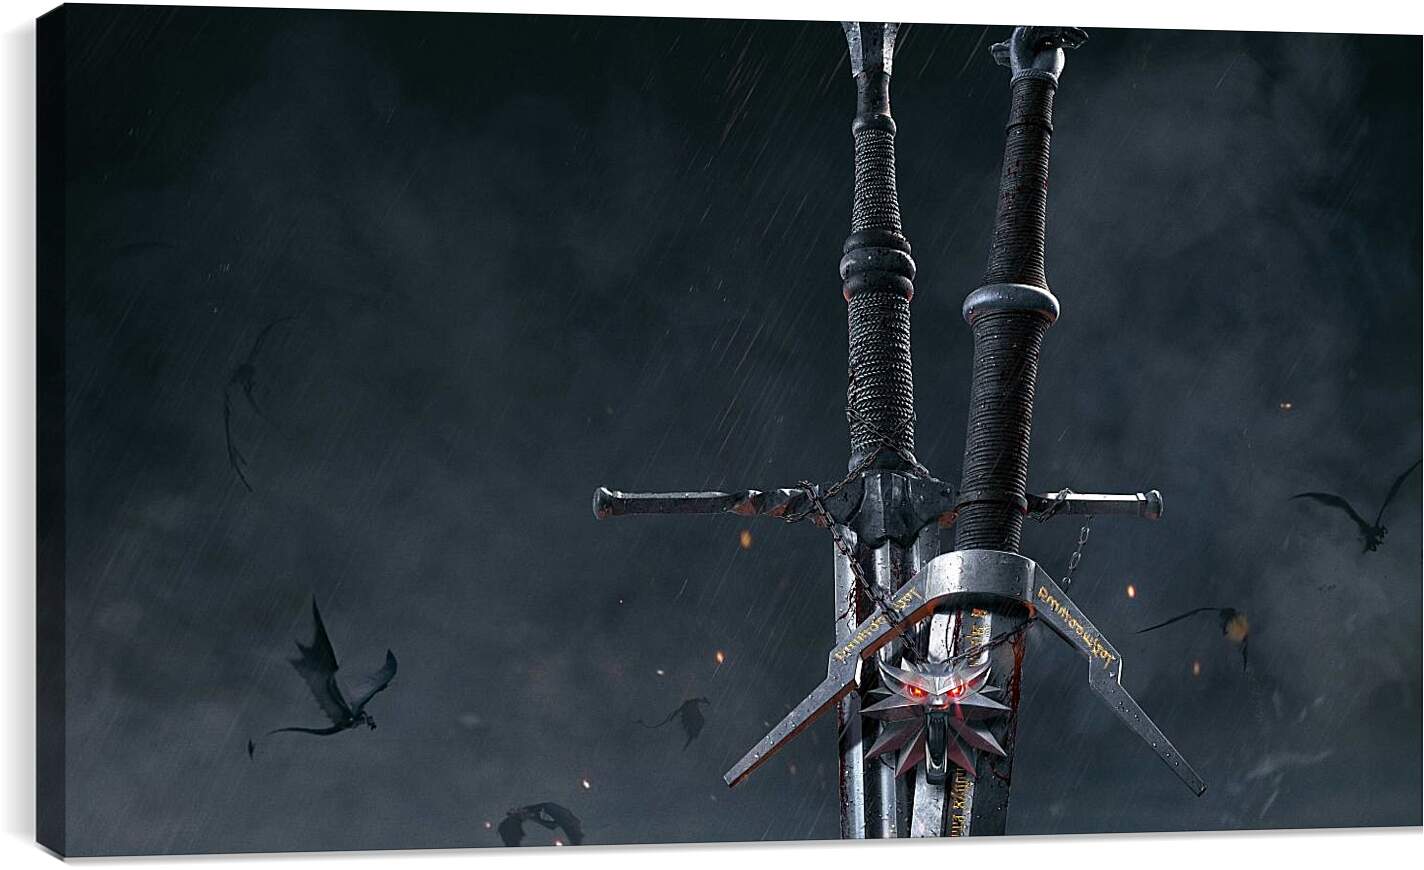 Постер и плакат - The Witcher (Ведьмак), стальной и серебряный мечи Геральта